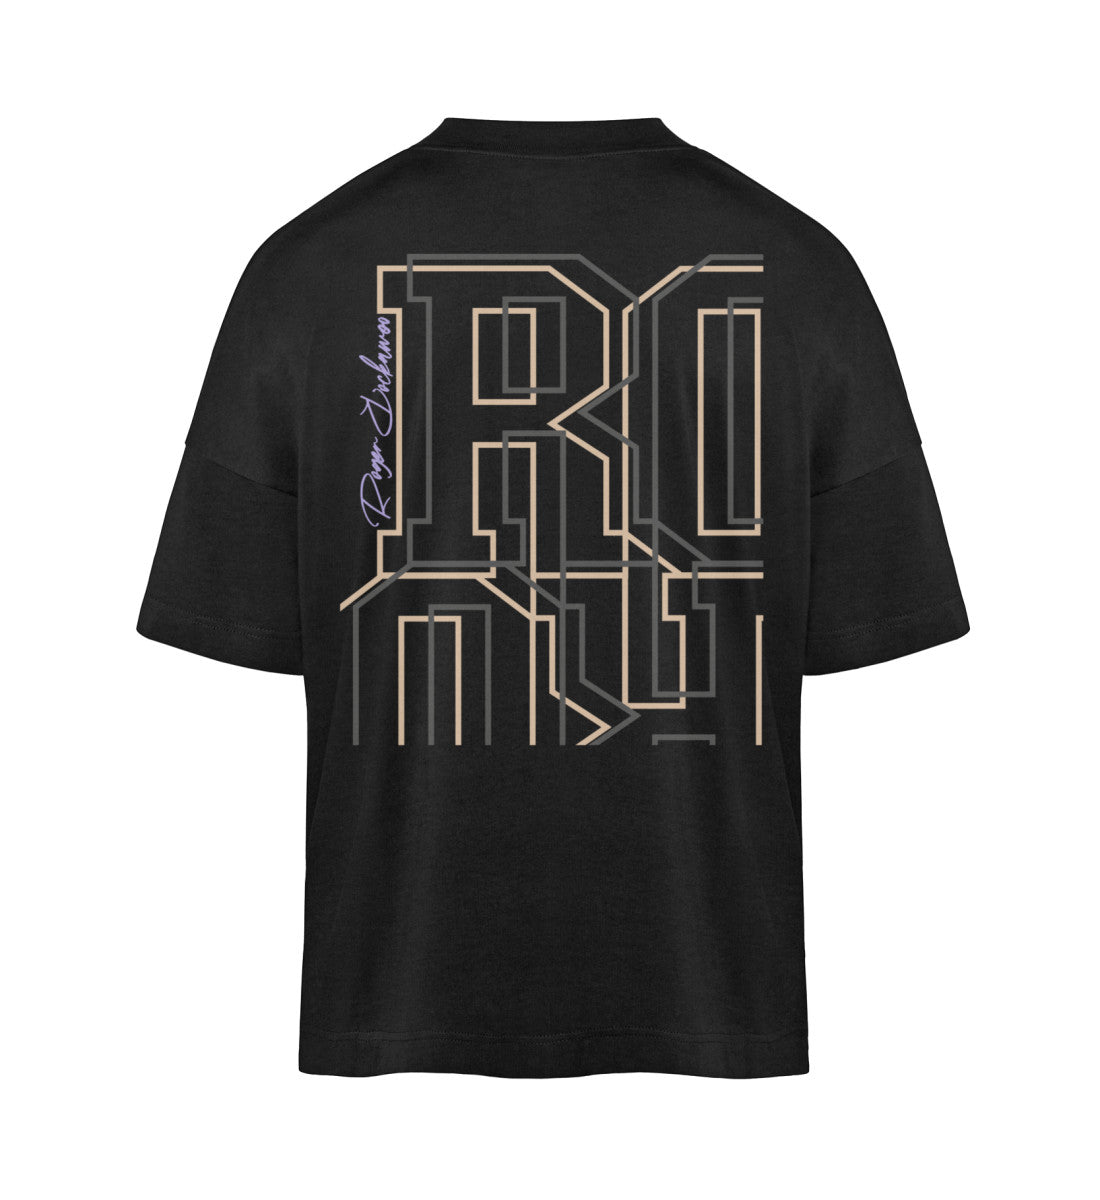 Schwarzes T-Shirt Unisex Oversize Fit für Frauen und Männer bedruckt mit dem Design der Roger Rockawoo Kollektion and then hip hop